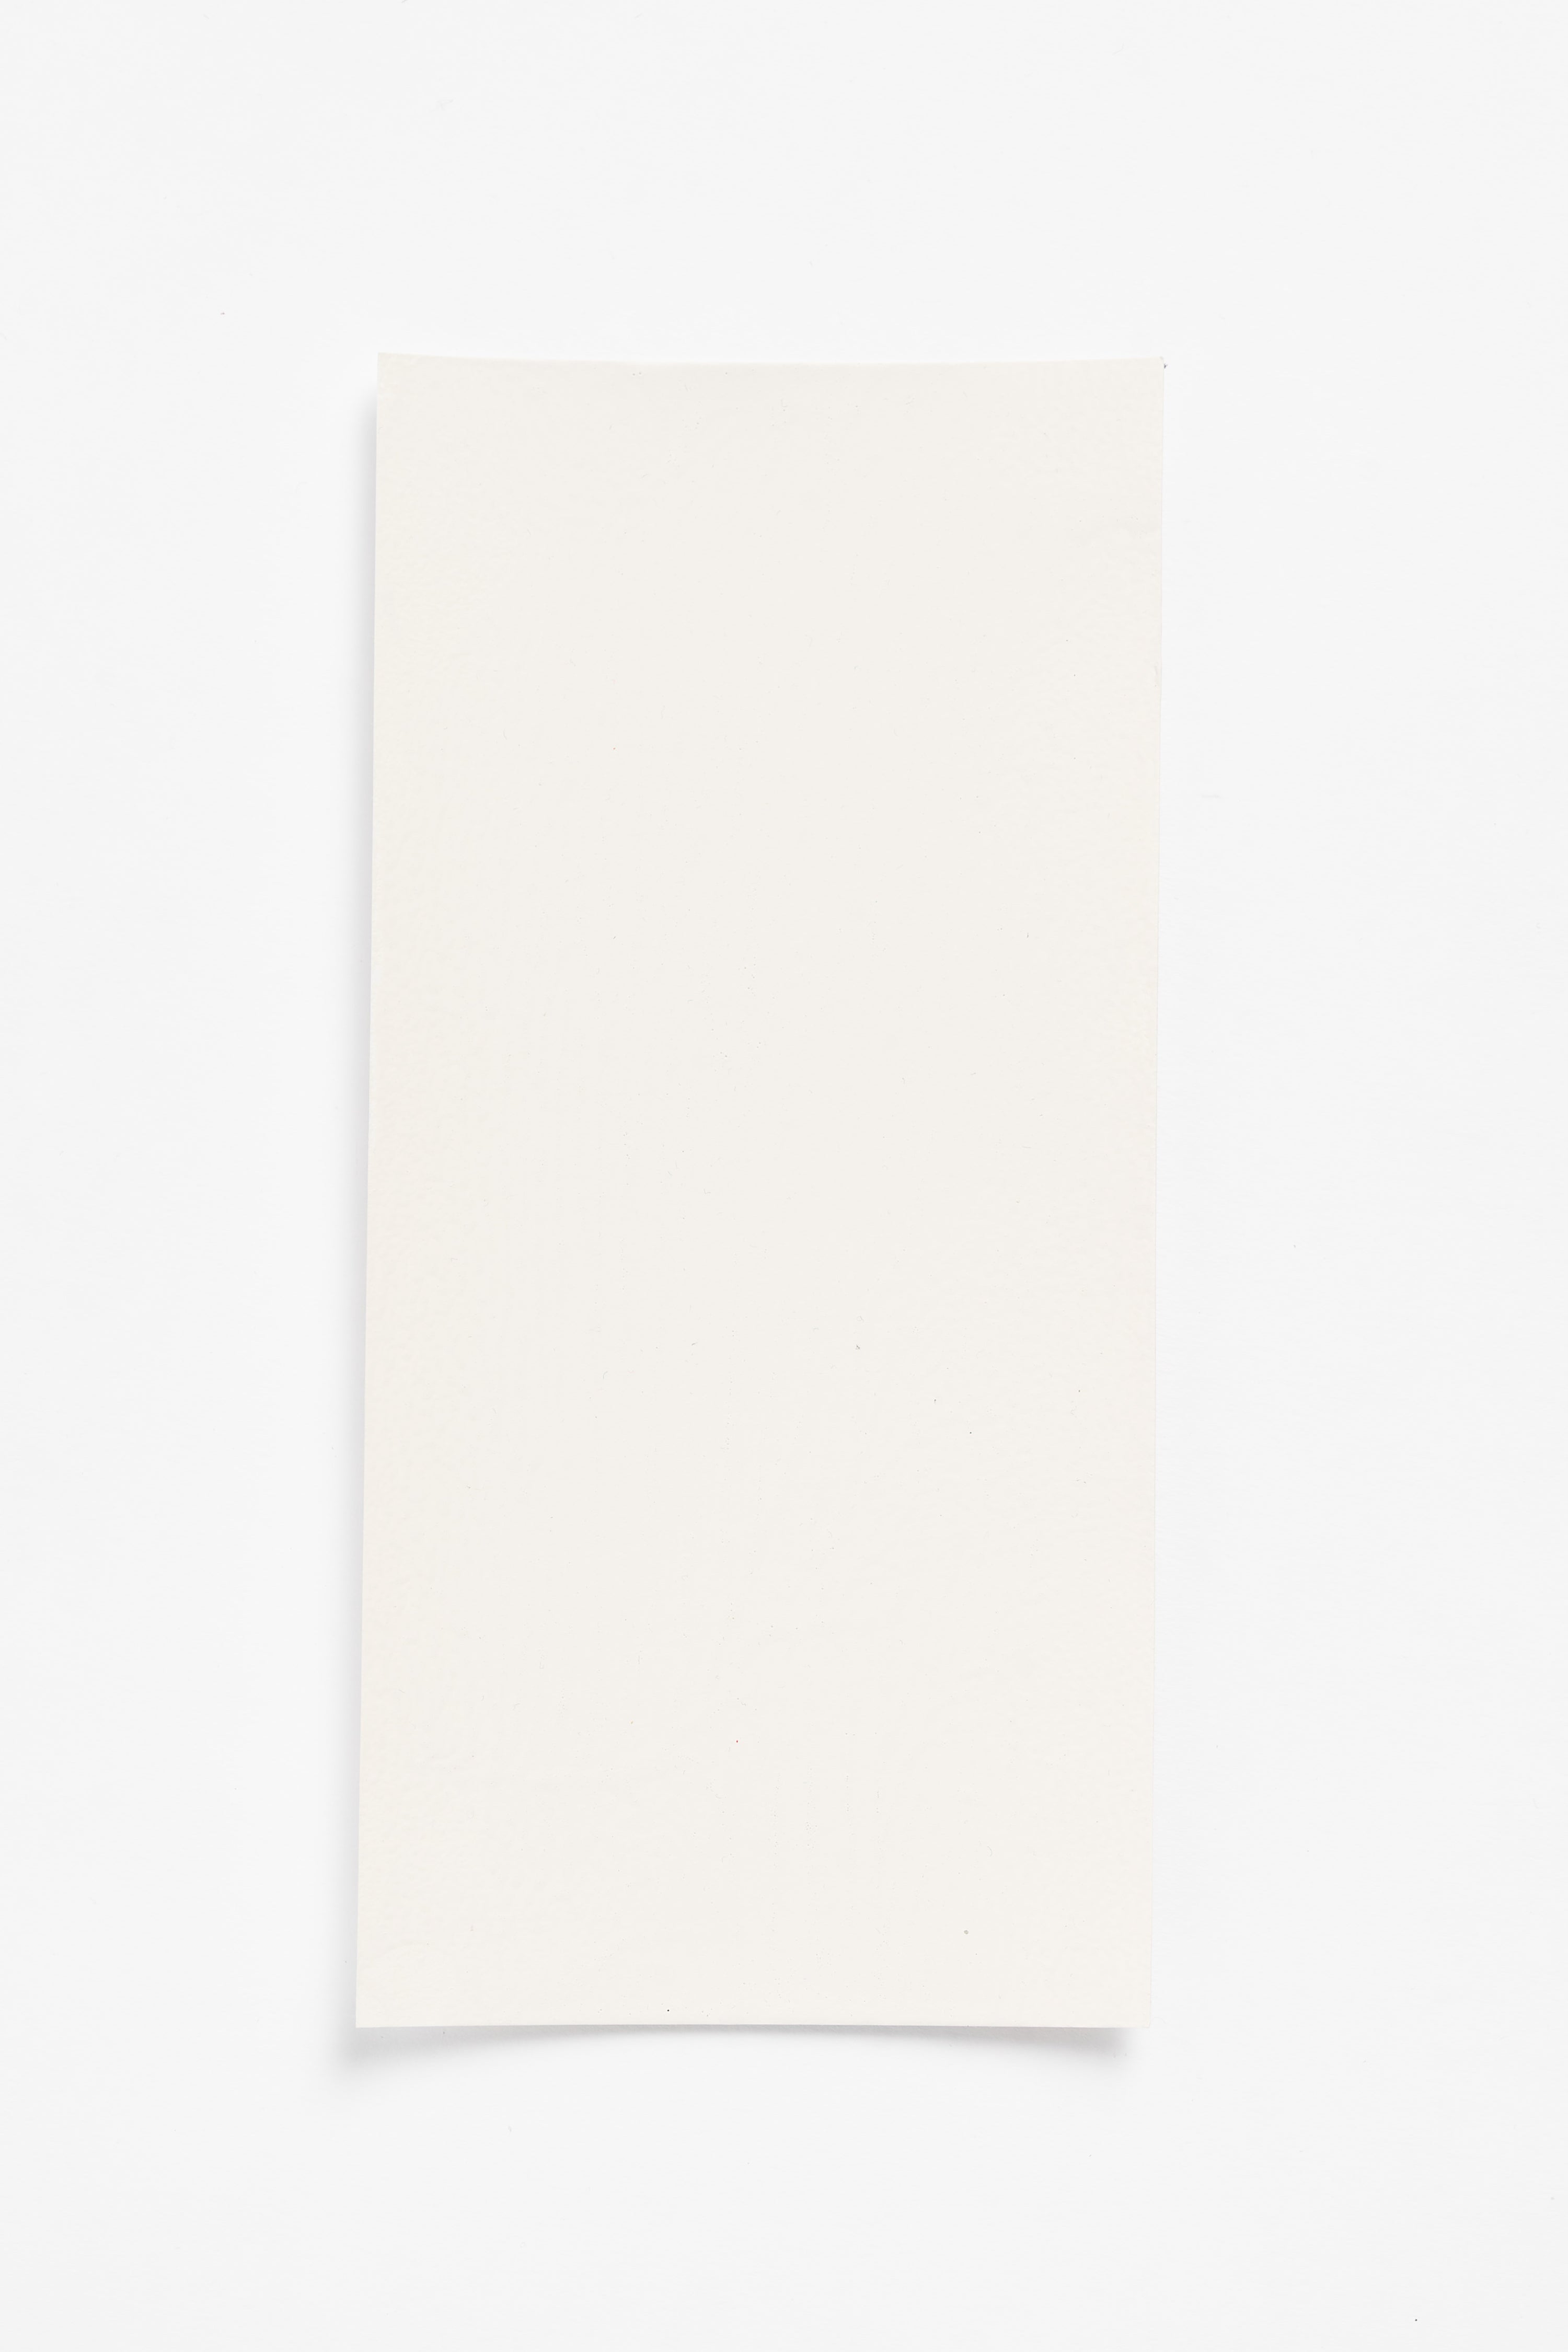 Flour — a paint colour developed by John Pawson for Blēo